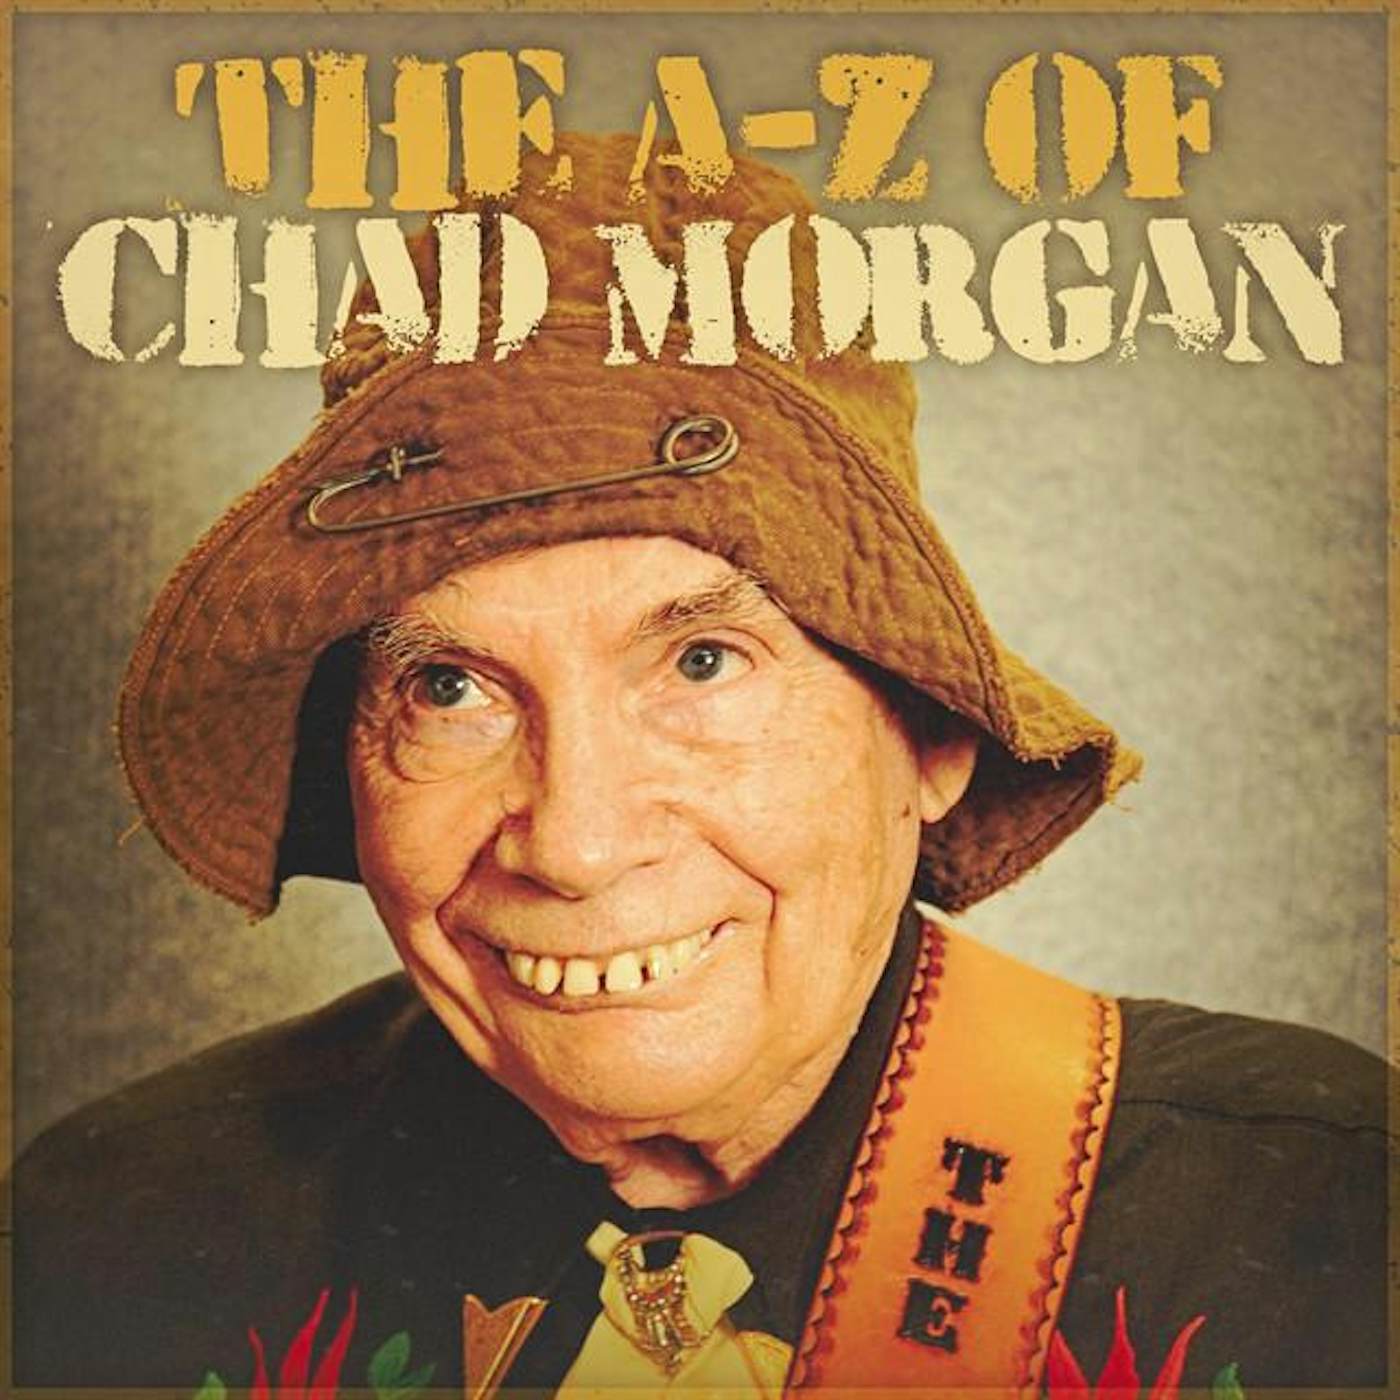 Chad Morgan